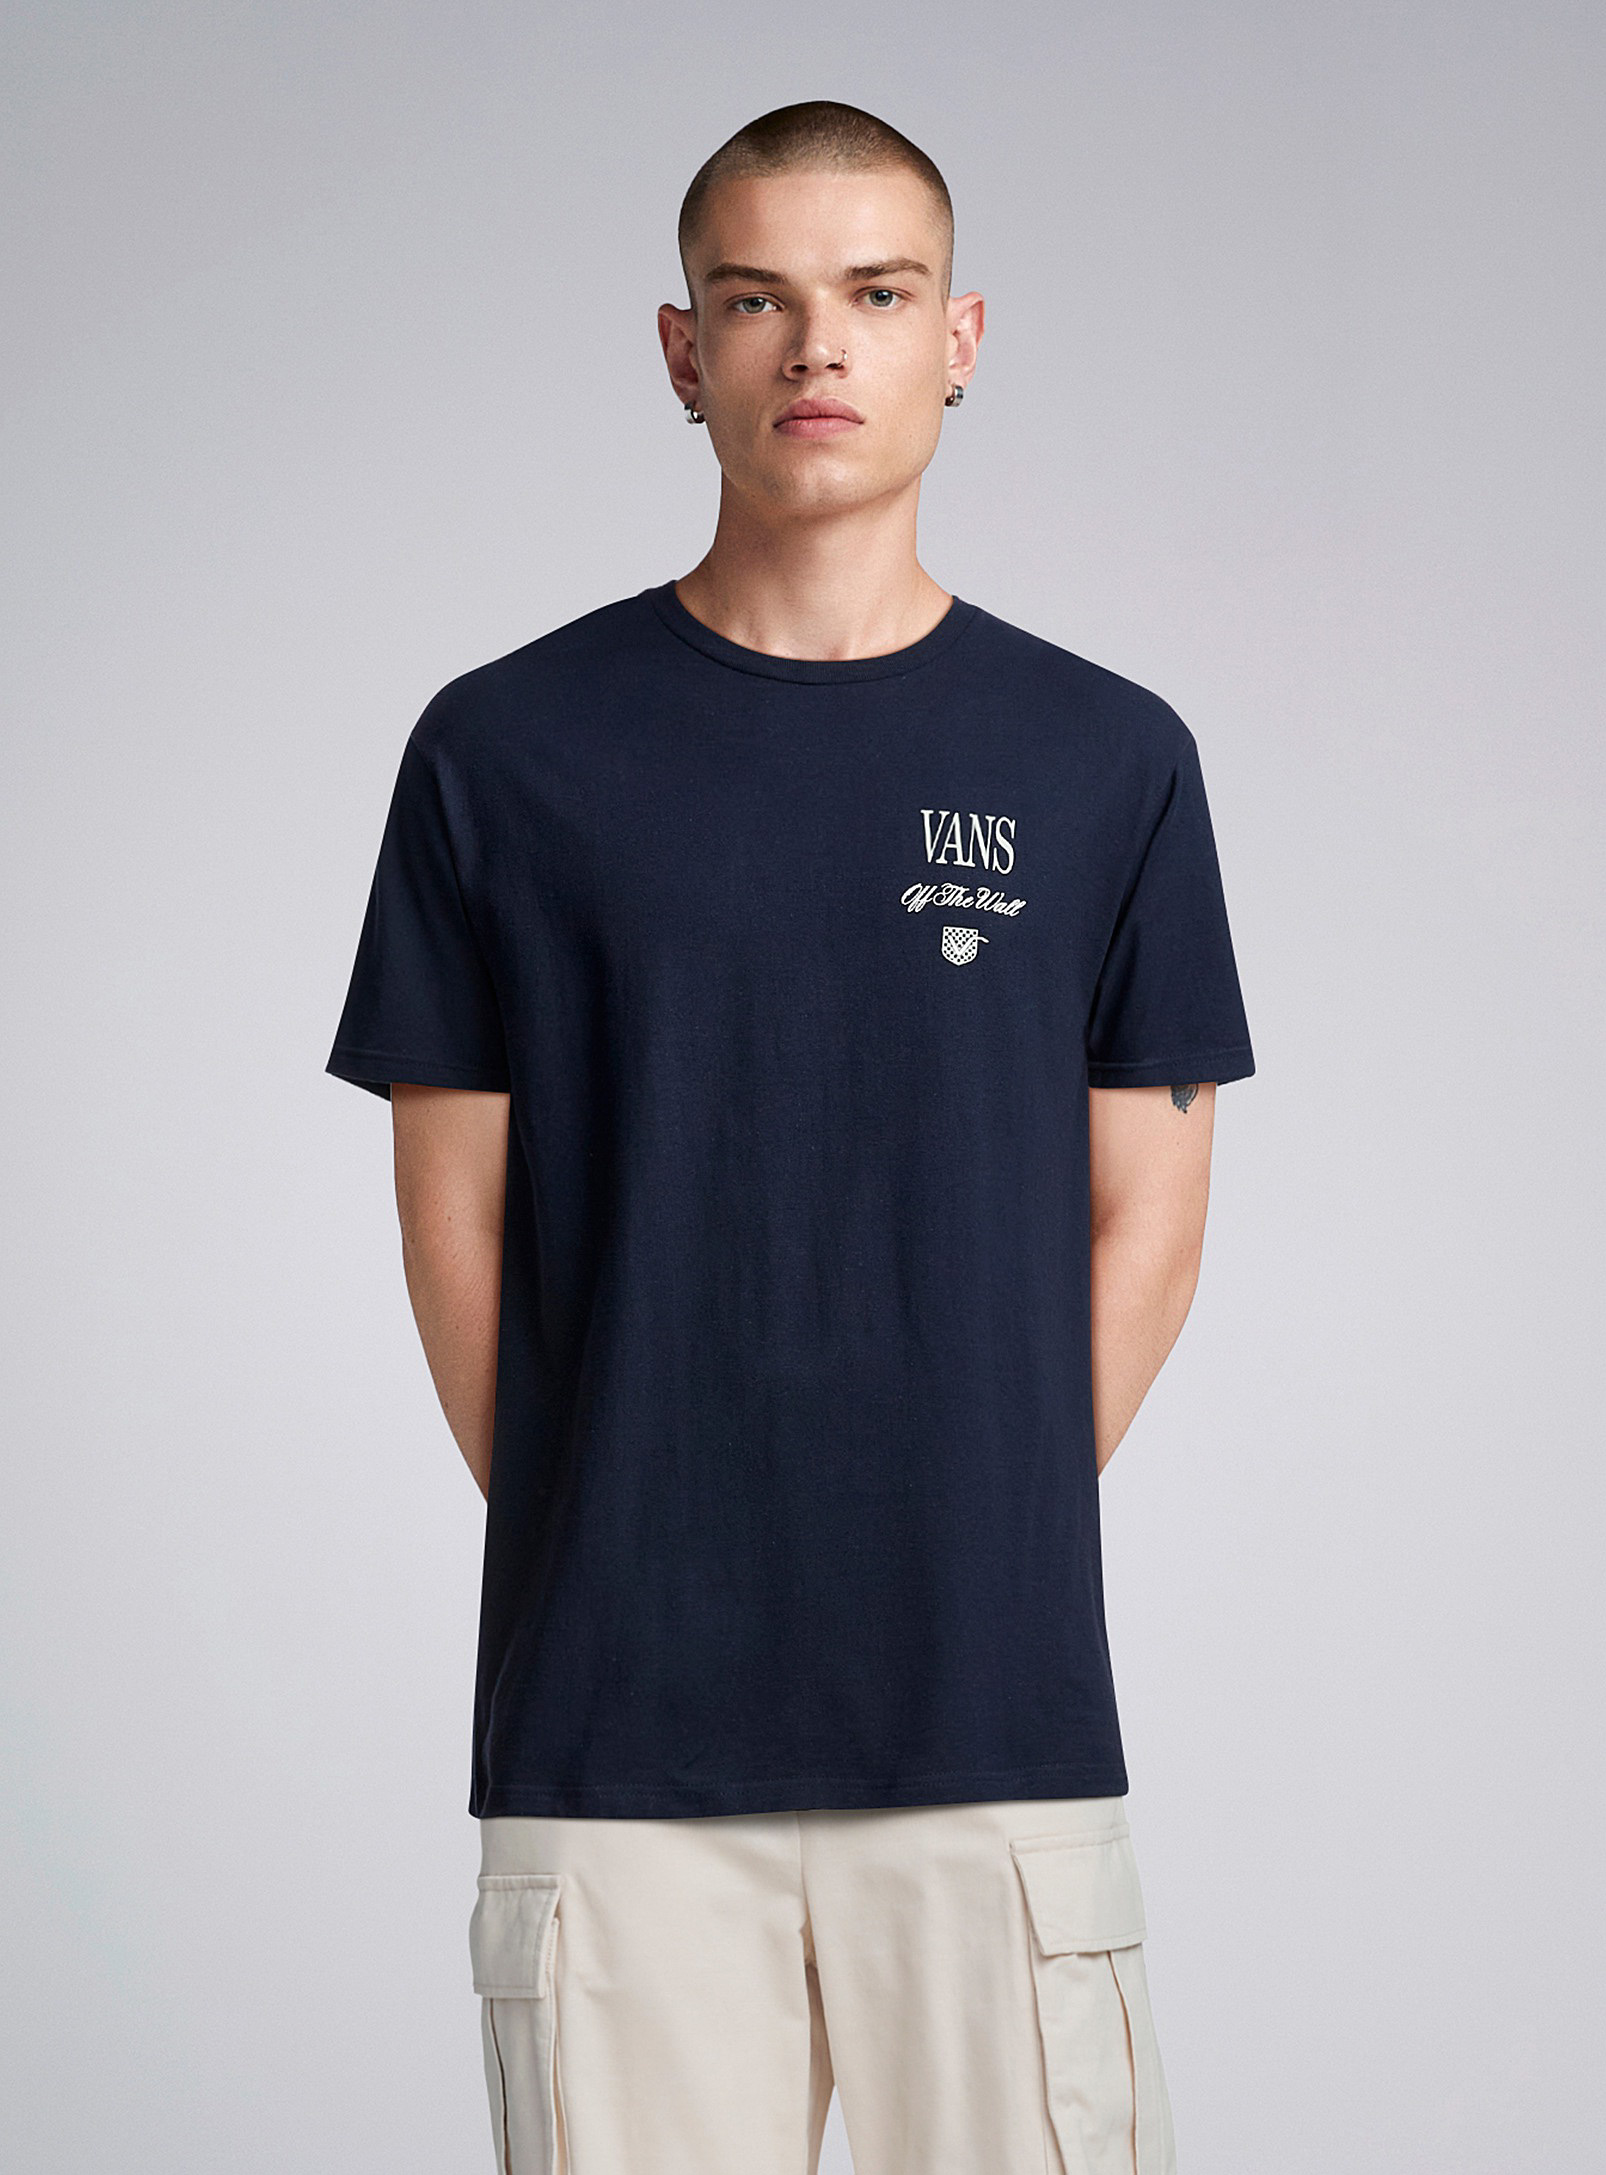 Vans Holmdel T-shirt In Navy/midnight Blue